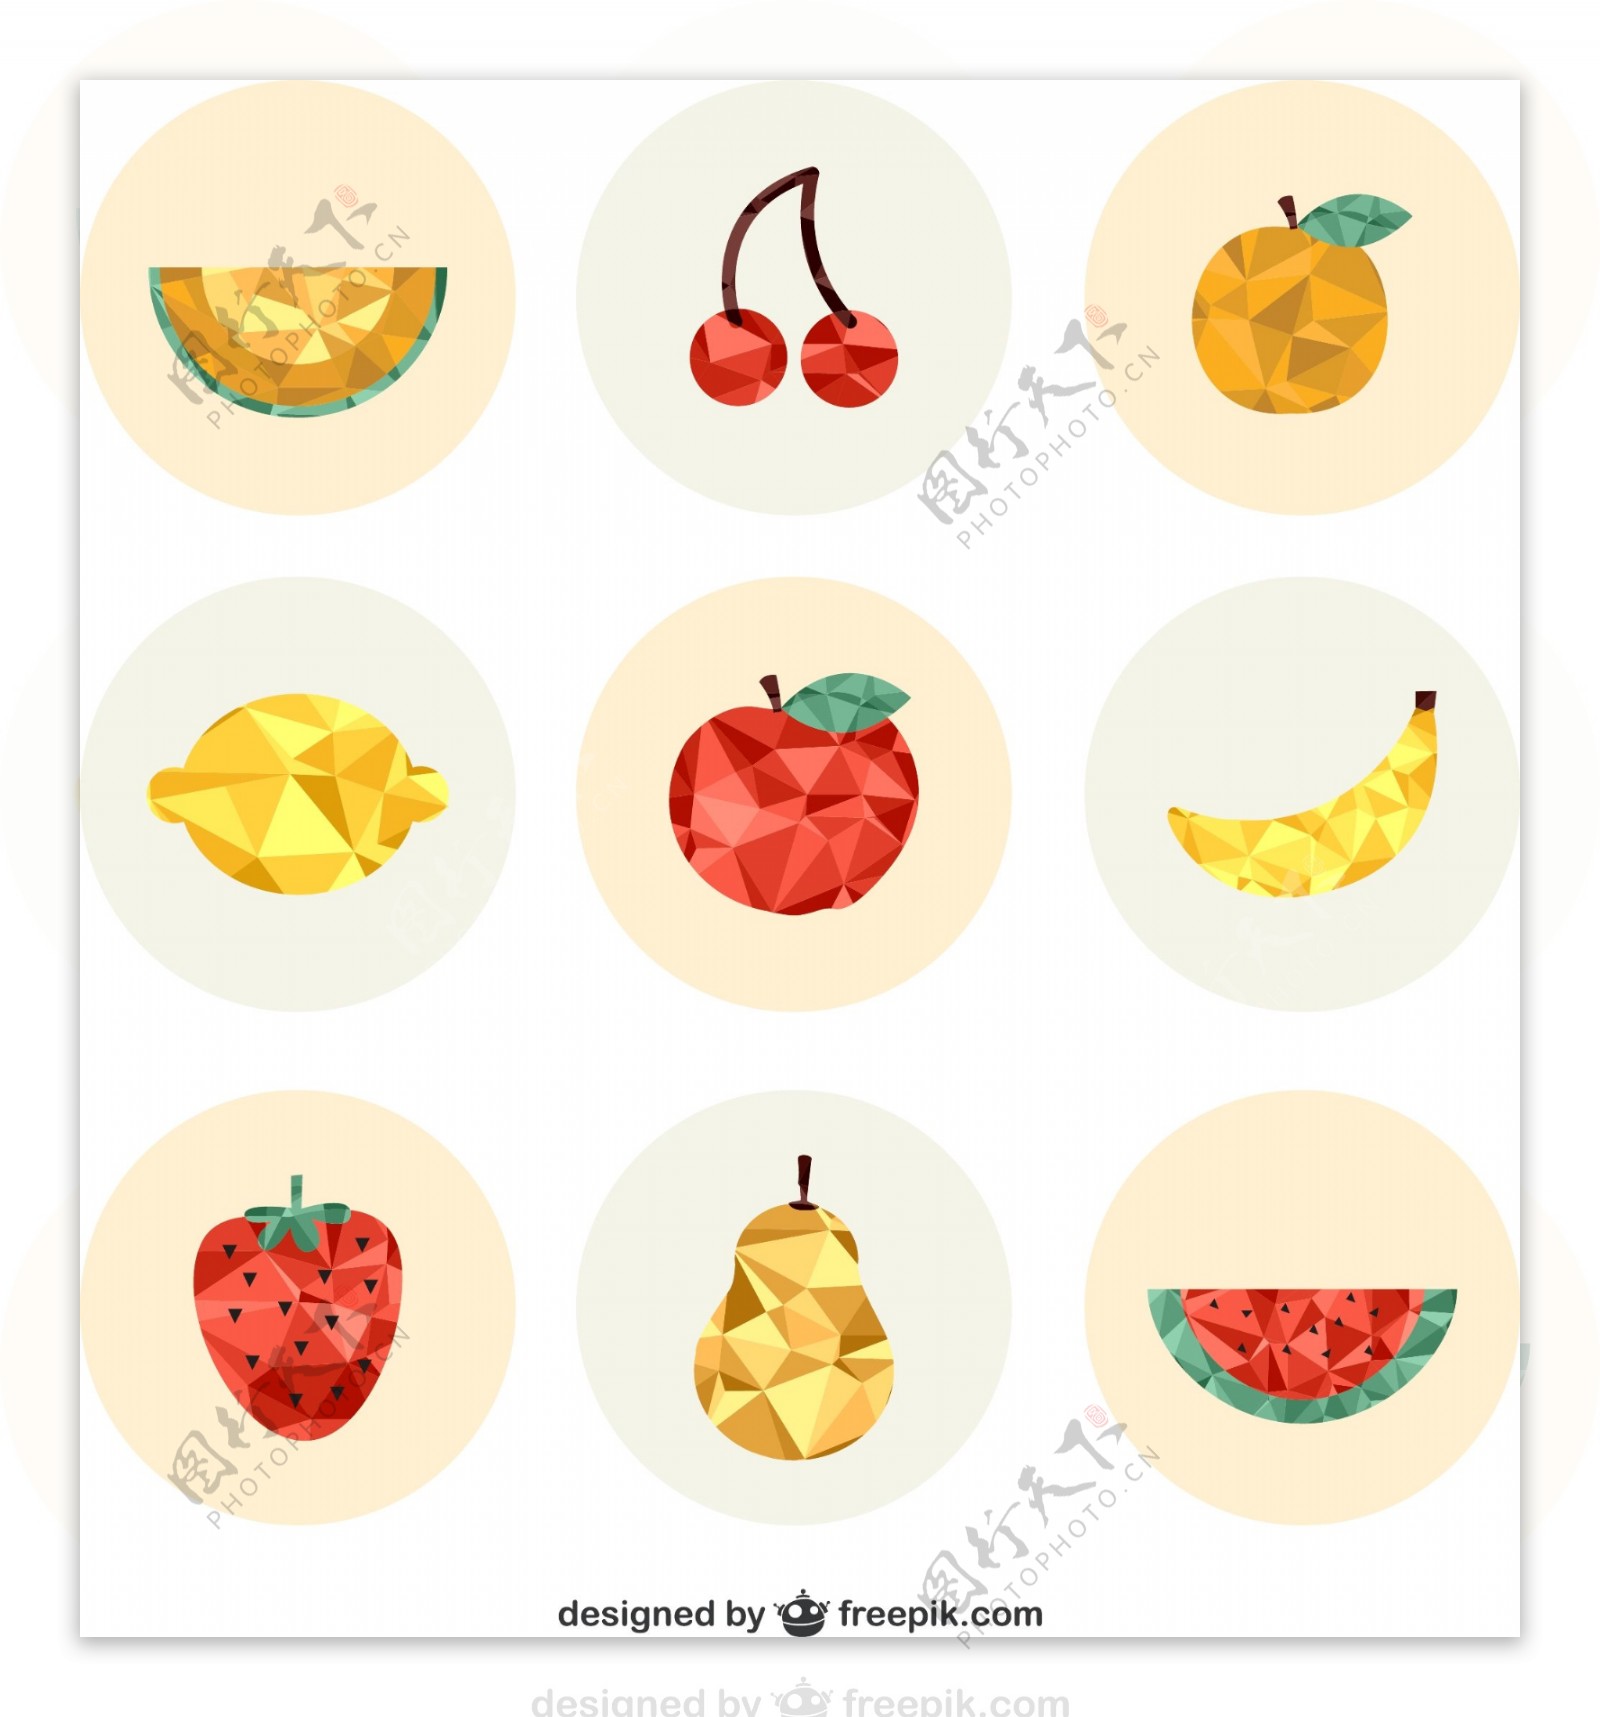 9款创意水果图标矢量素材